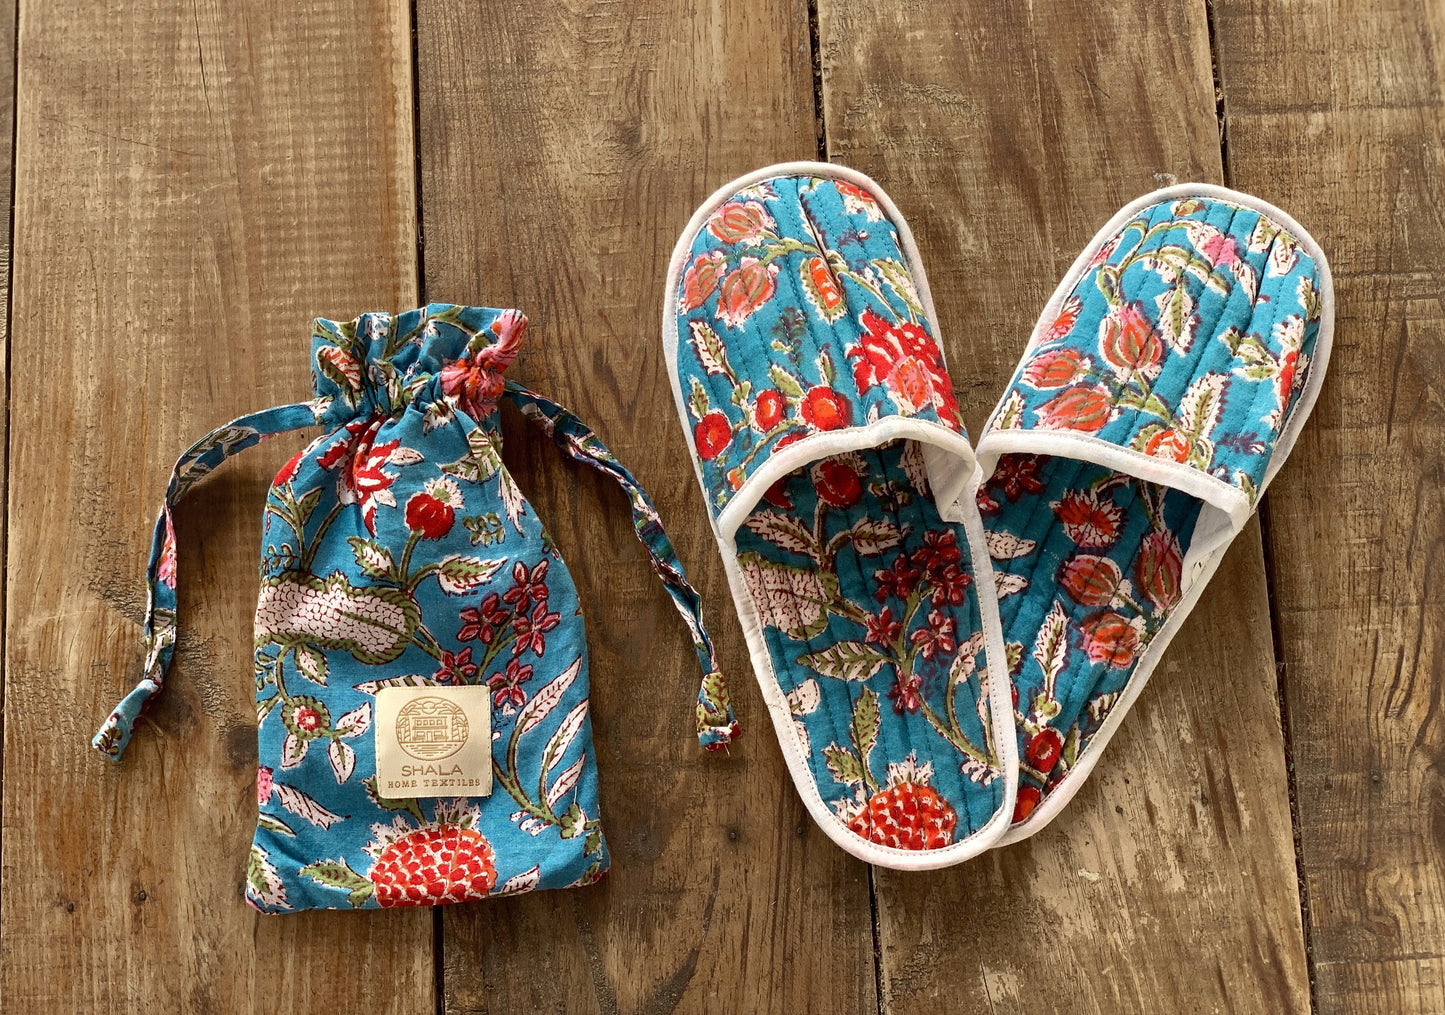 SET regalo · Pijama manga/pantalón corto y zapatillas a juego · Algodón puro estampado block print artesanal en India · Azul flores rojo